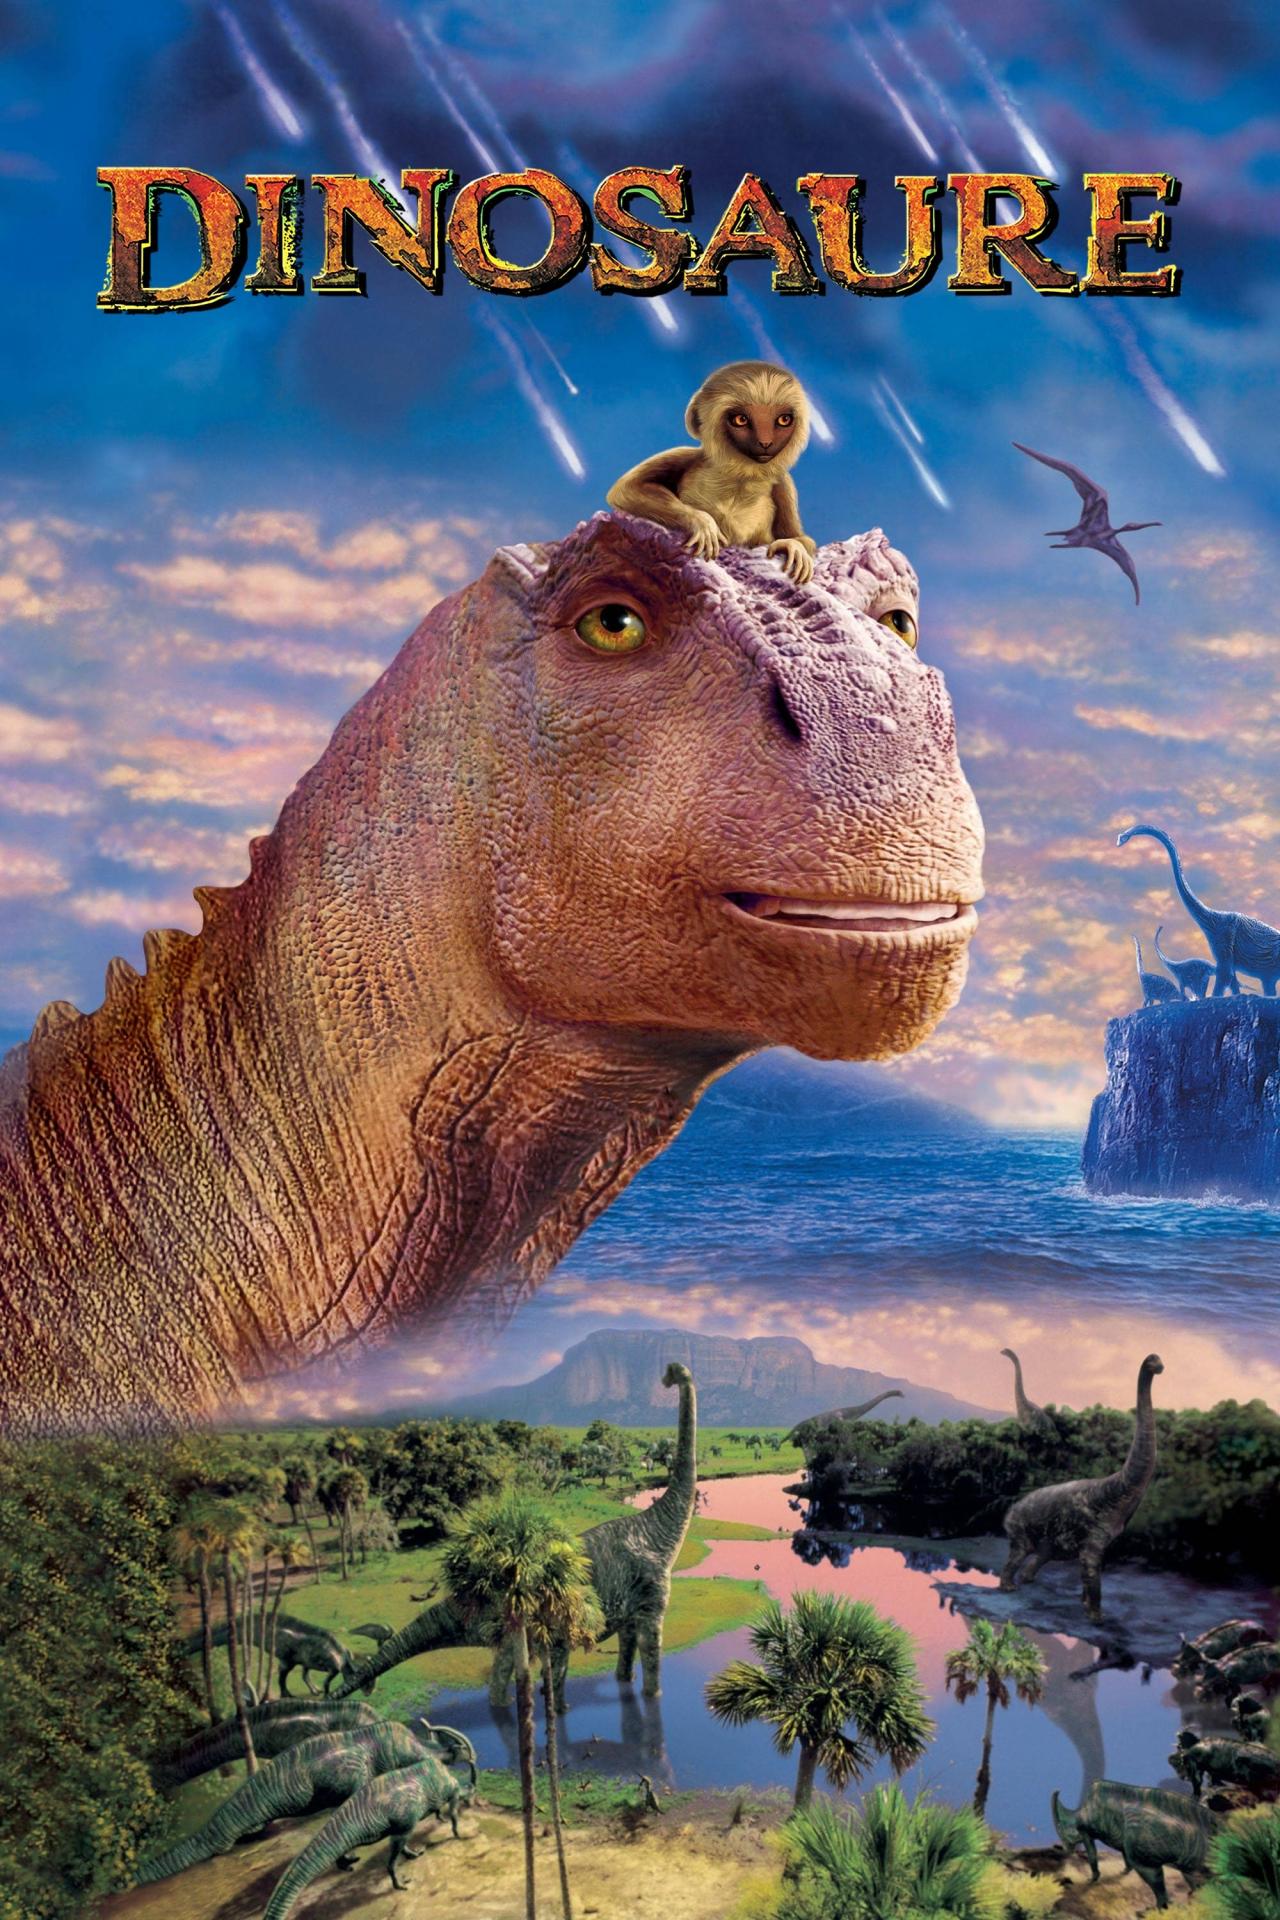 Dinosaure est-il disponible sur Netflix ou autre ?